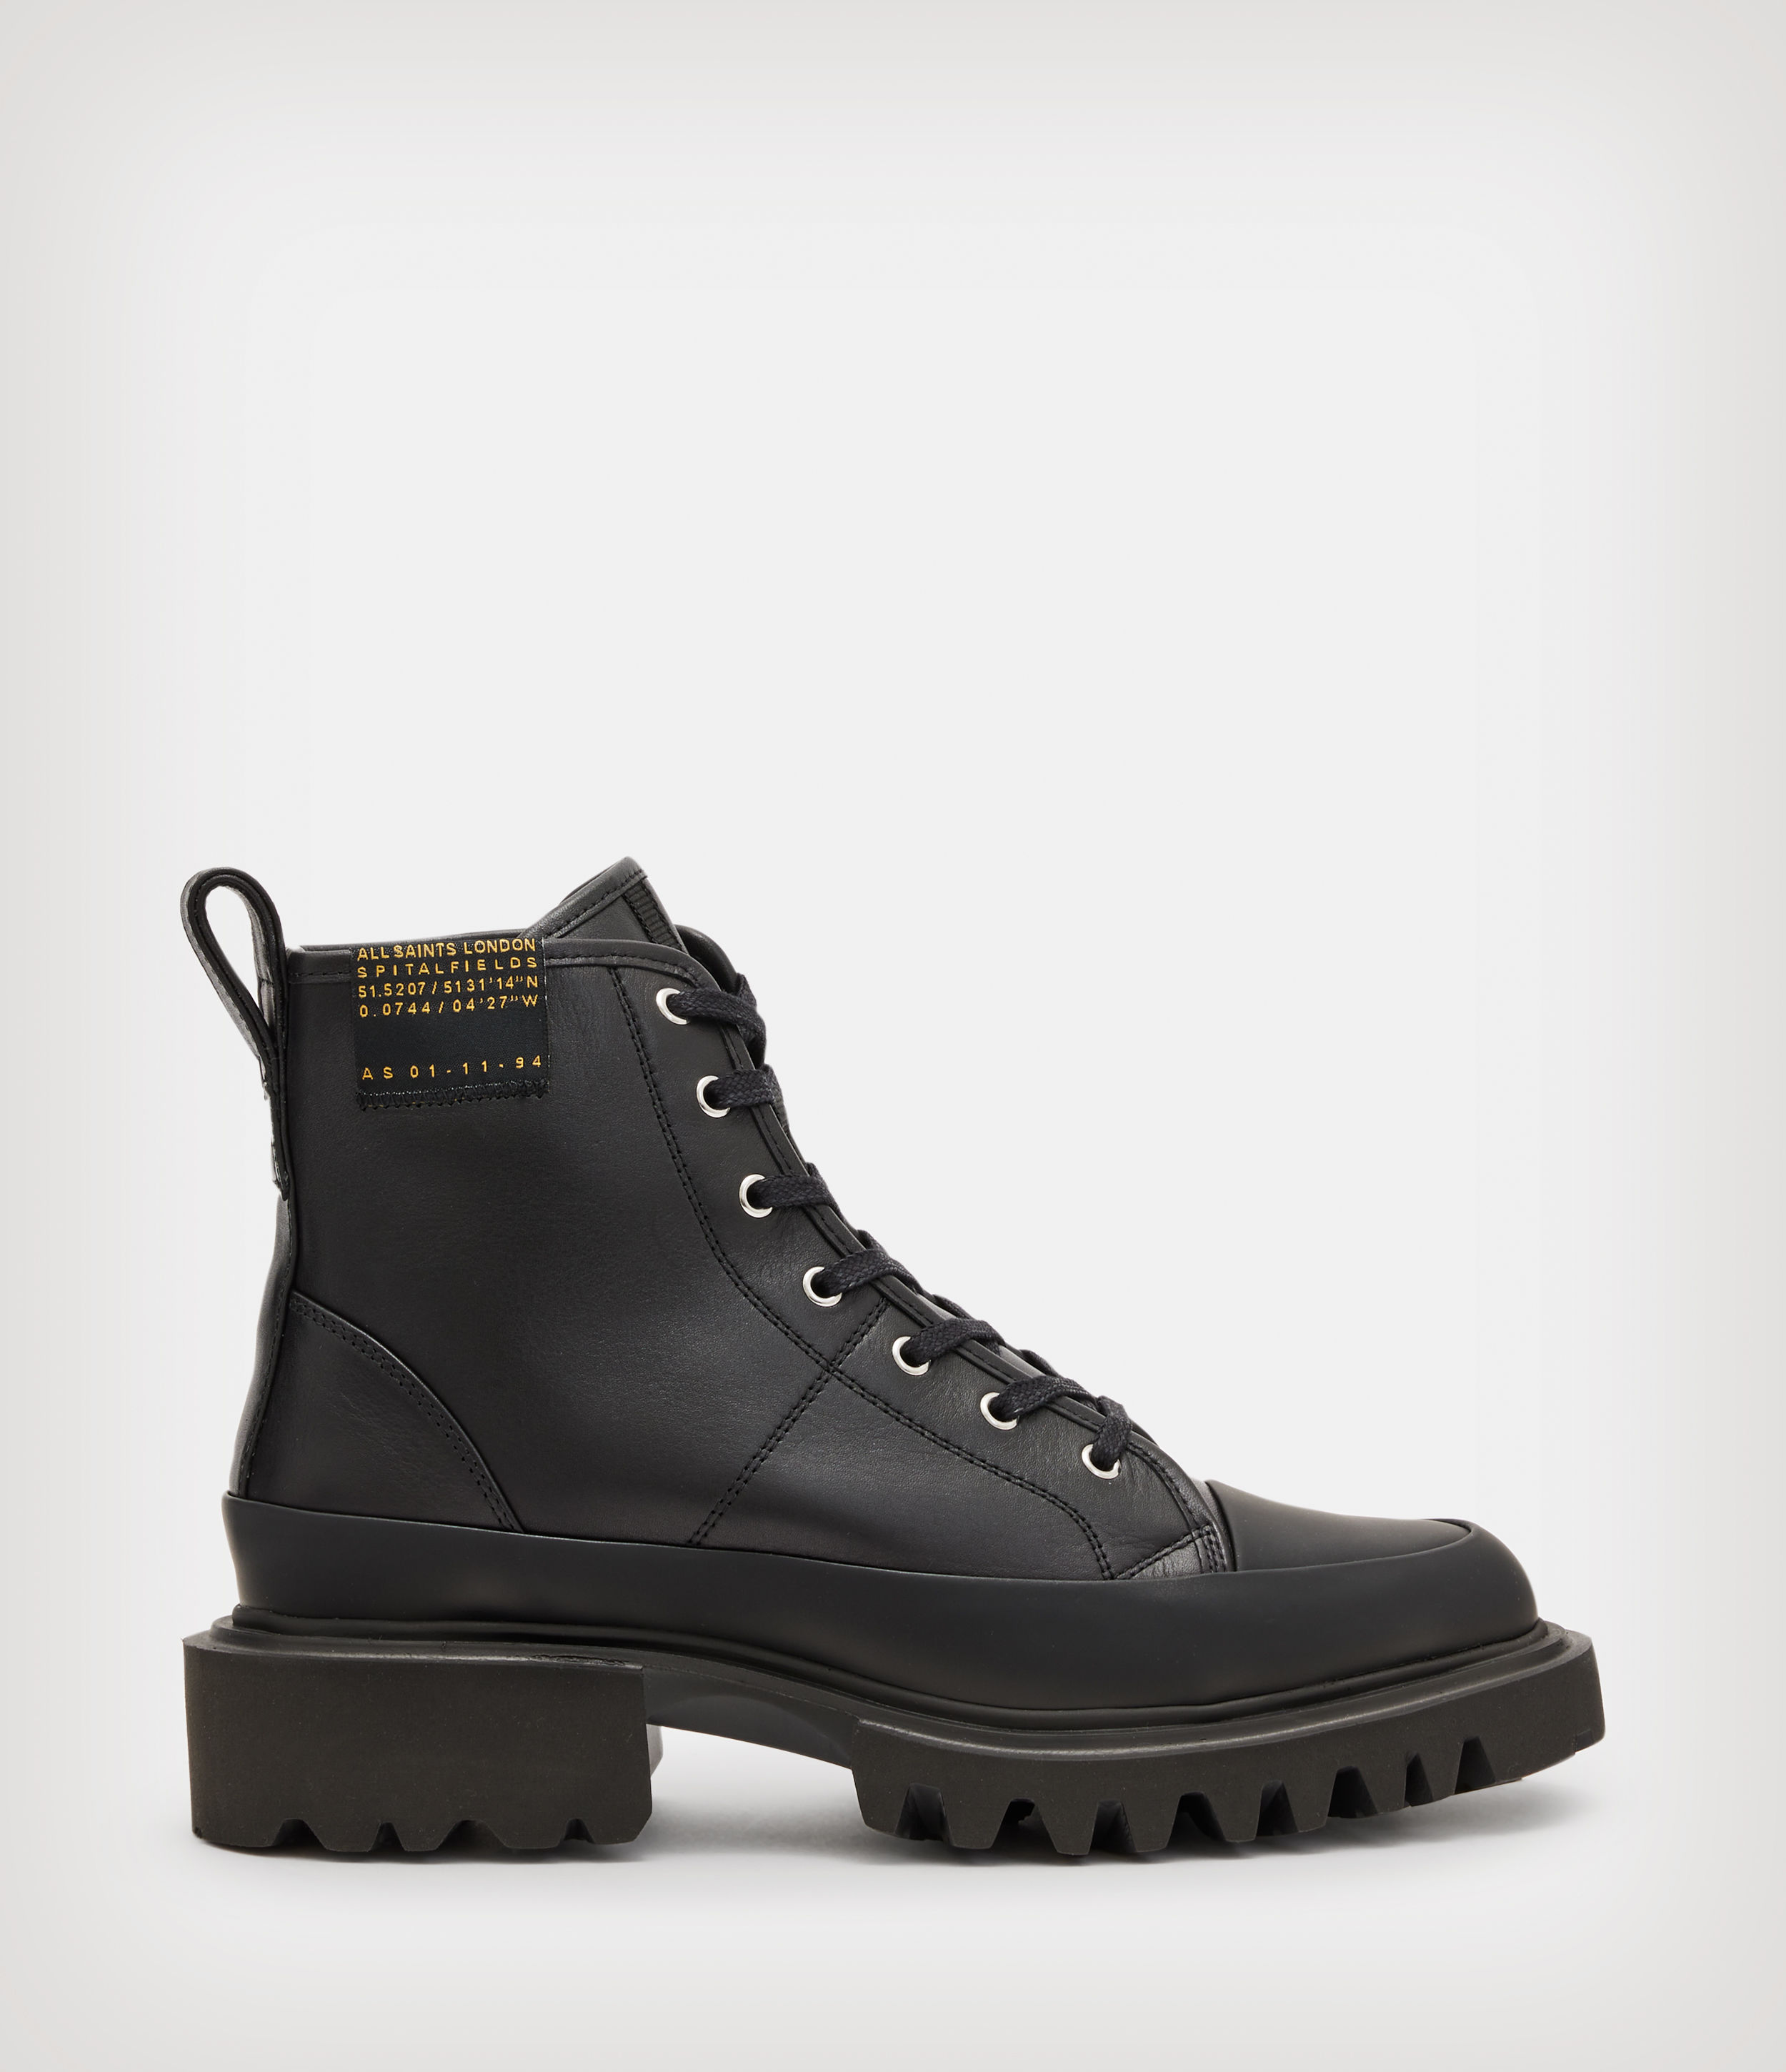 AllSaints Women’s Myla Leather Combat Boots, Black, Size: UK 6/US 9/EU 39